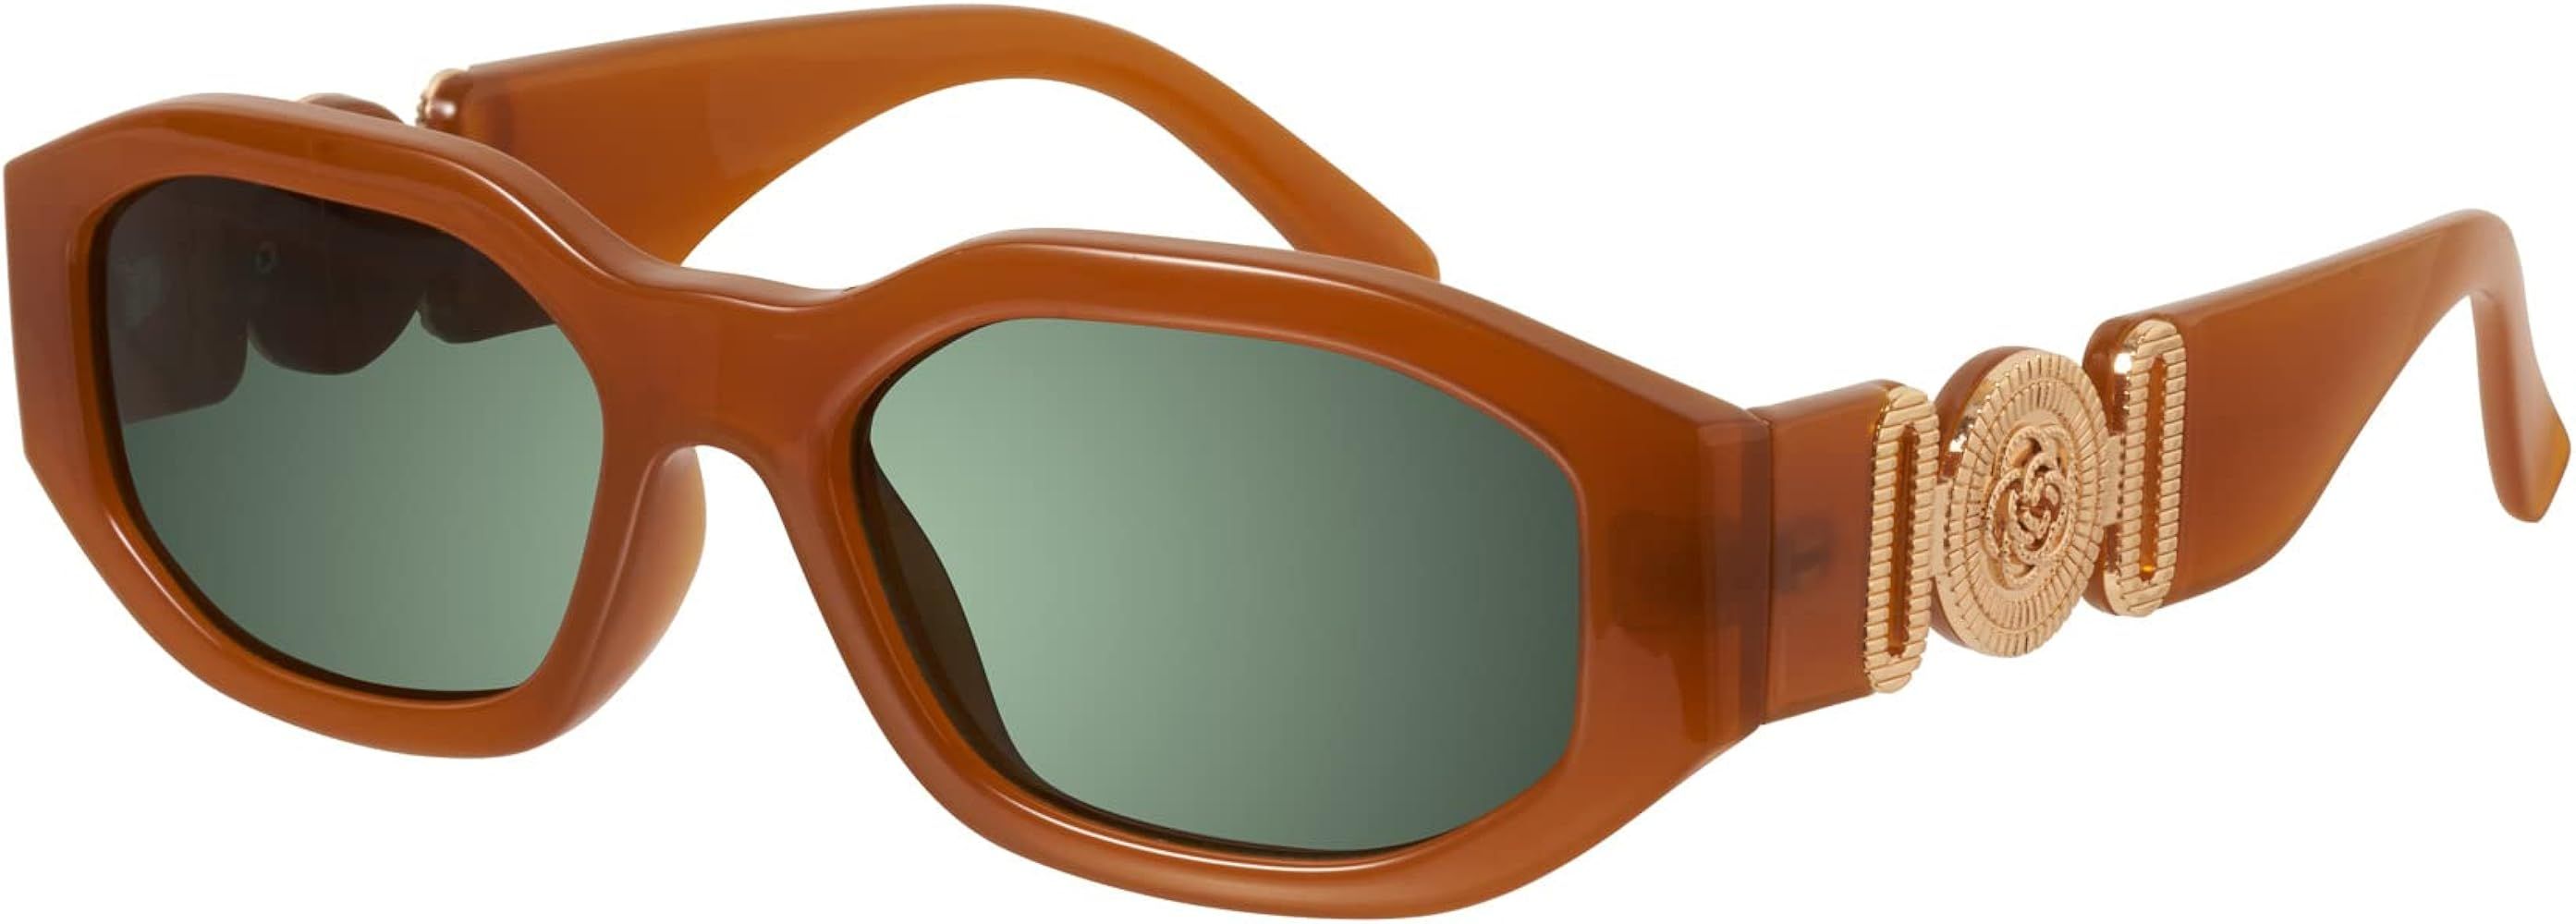 mosanana 2021 Trendy Irregular Sunglasses for Women Men Model-TRACER | Amazon (US)